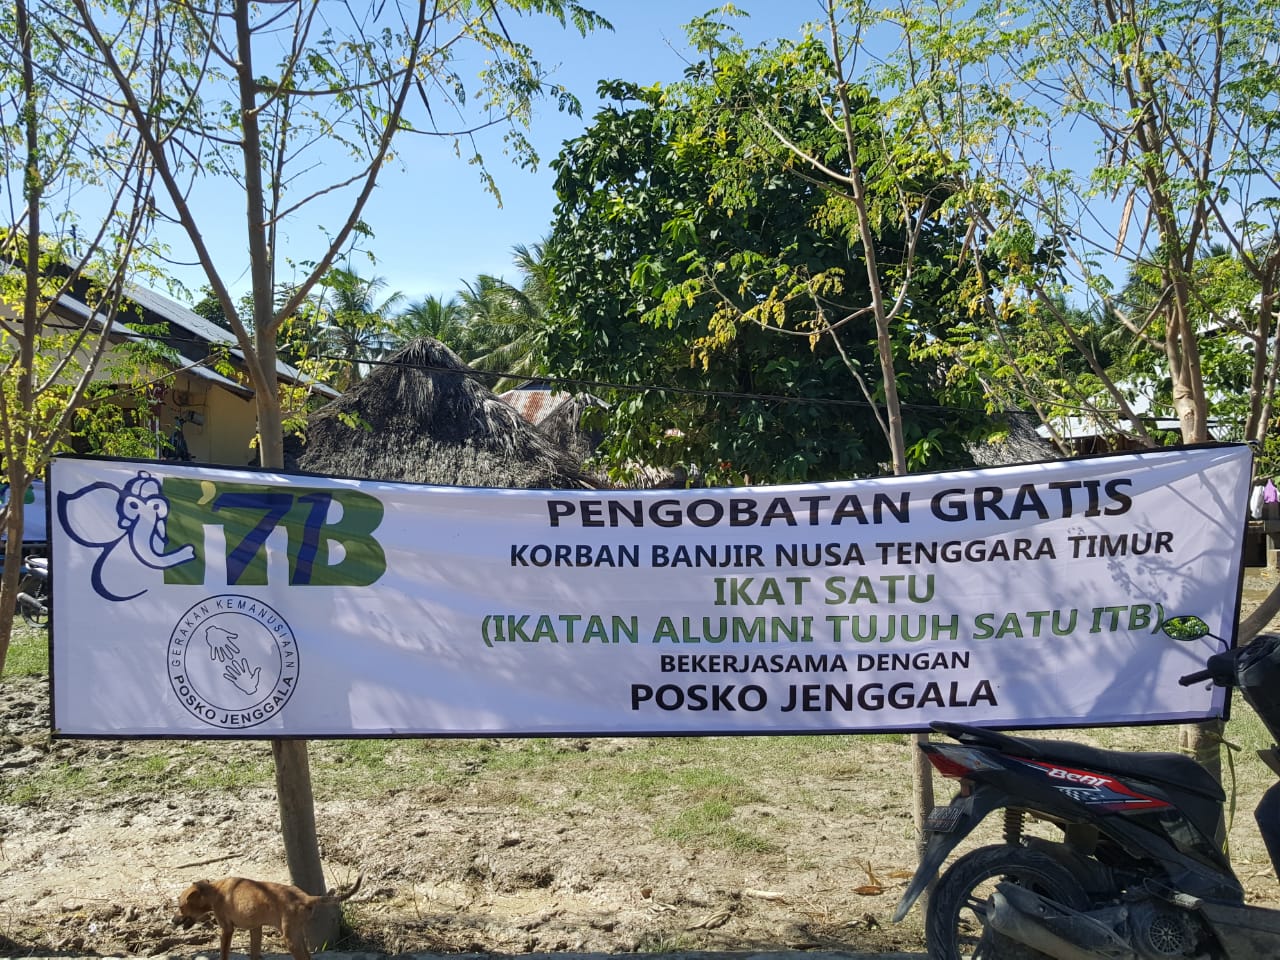 Posko Jenggala dan Ikatan Alumni 71 ITB  (Ikatsatu ITB) Bantu Korban Banjir NTT